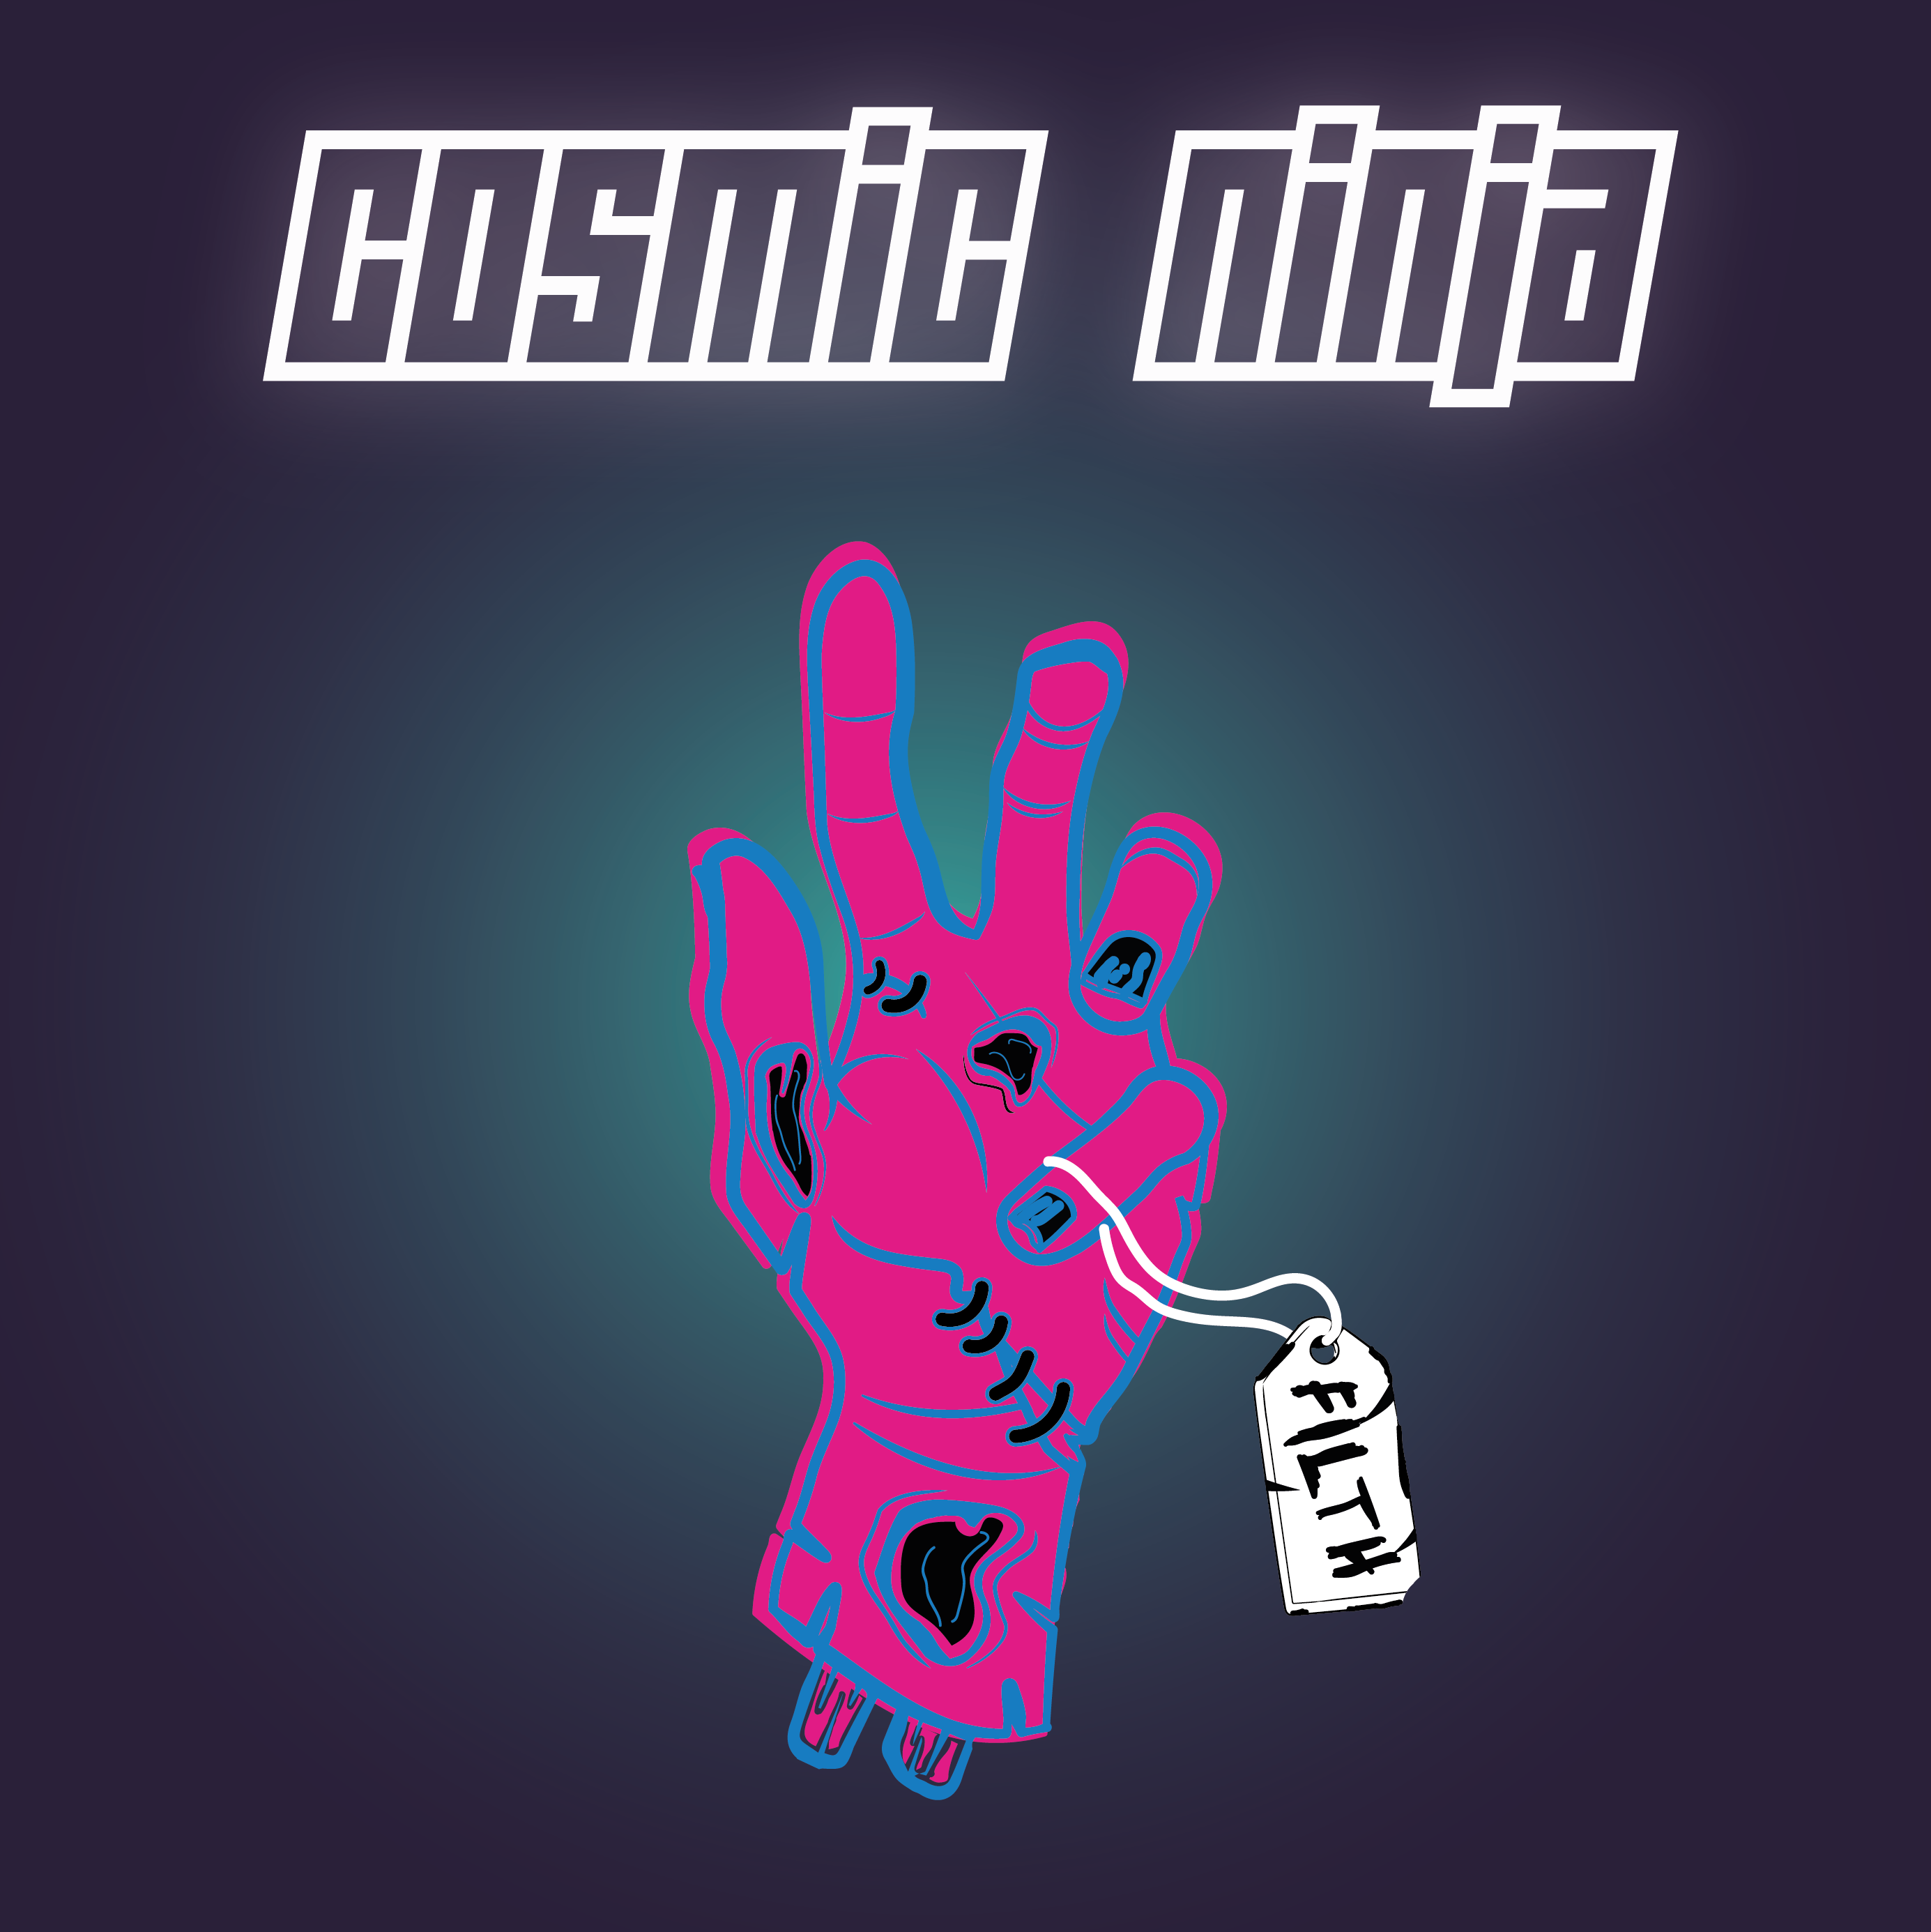 Cosmic Ninja ‘Filth’ EP album artwork